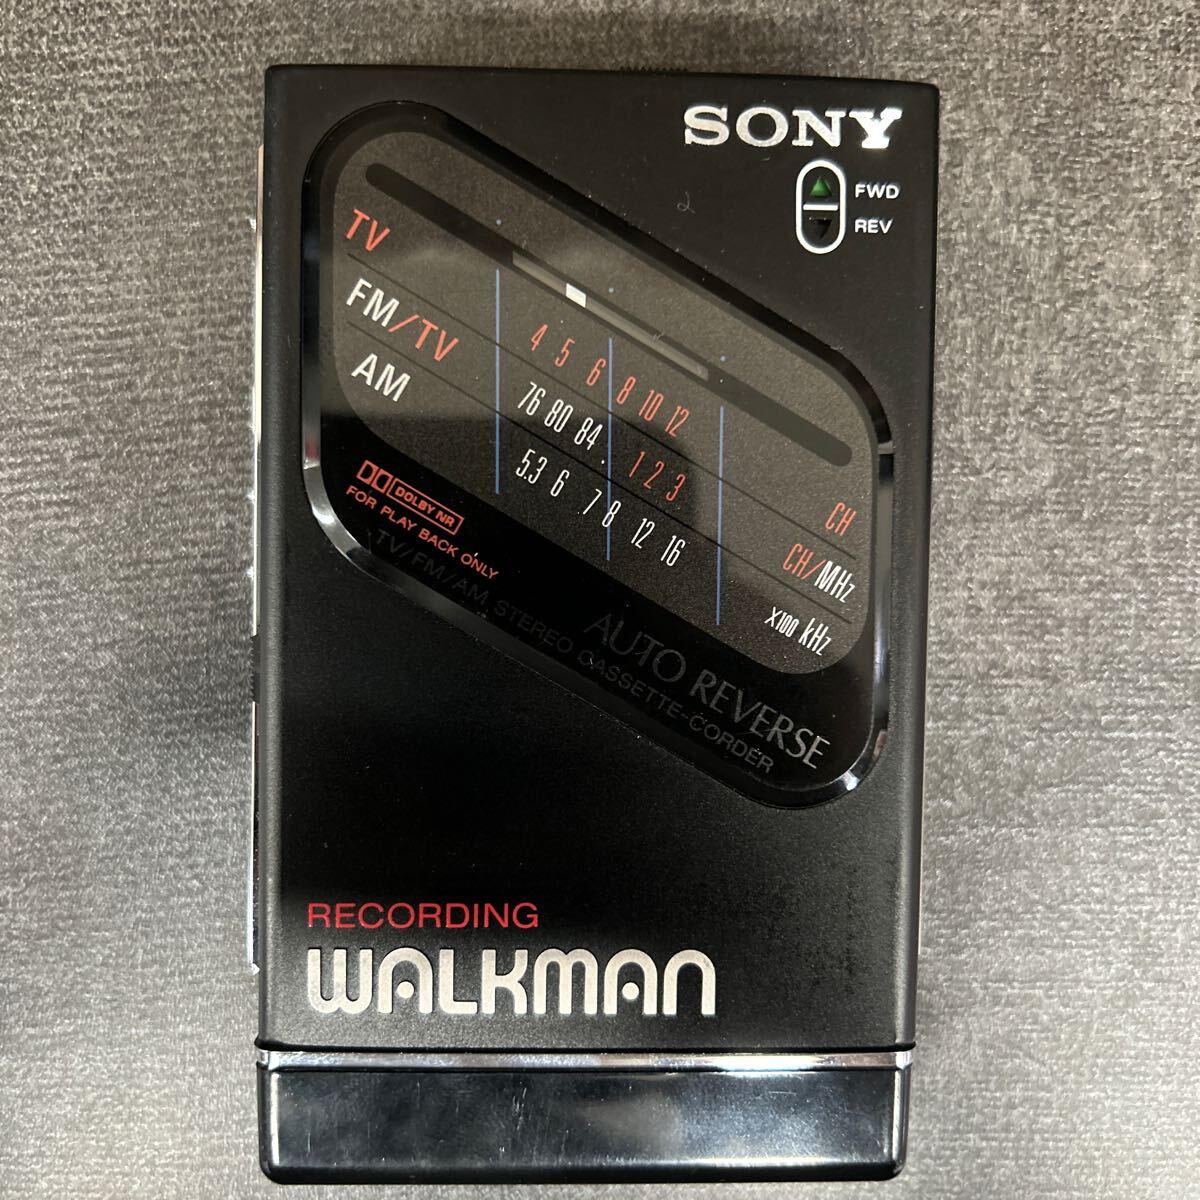 SONY ソニー ウォークマン カセットウォークマン WALKMAN RECORDING WALKMAN ラジカセ FM AM 黒 ブラック WM-F203 